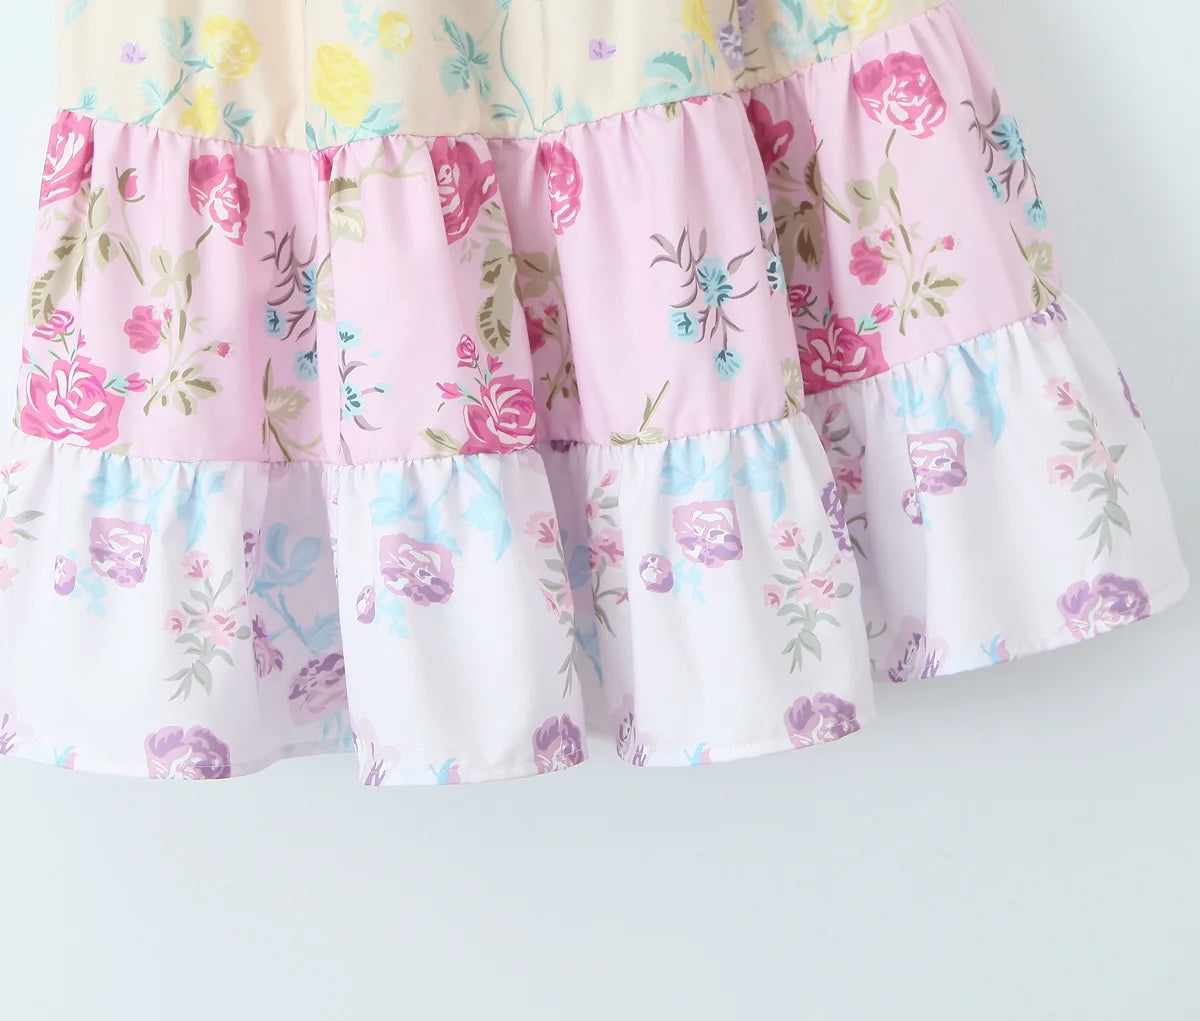 Floral Print Tie-Shoulder Dress for Summer - Tiered Cami Sundress